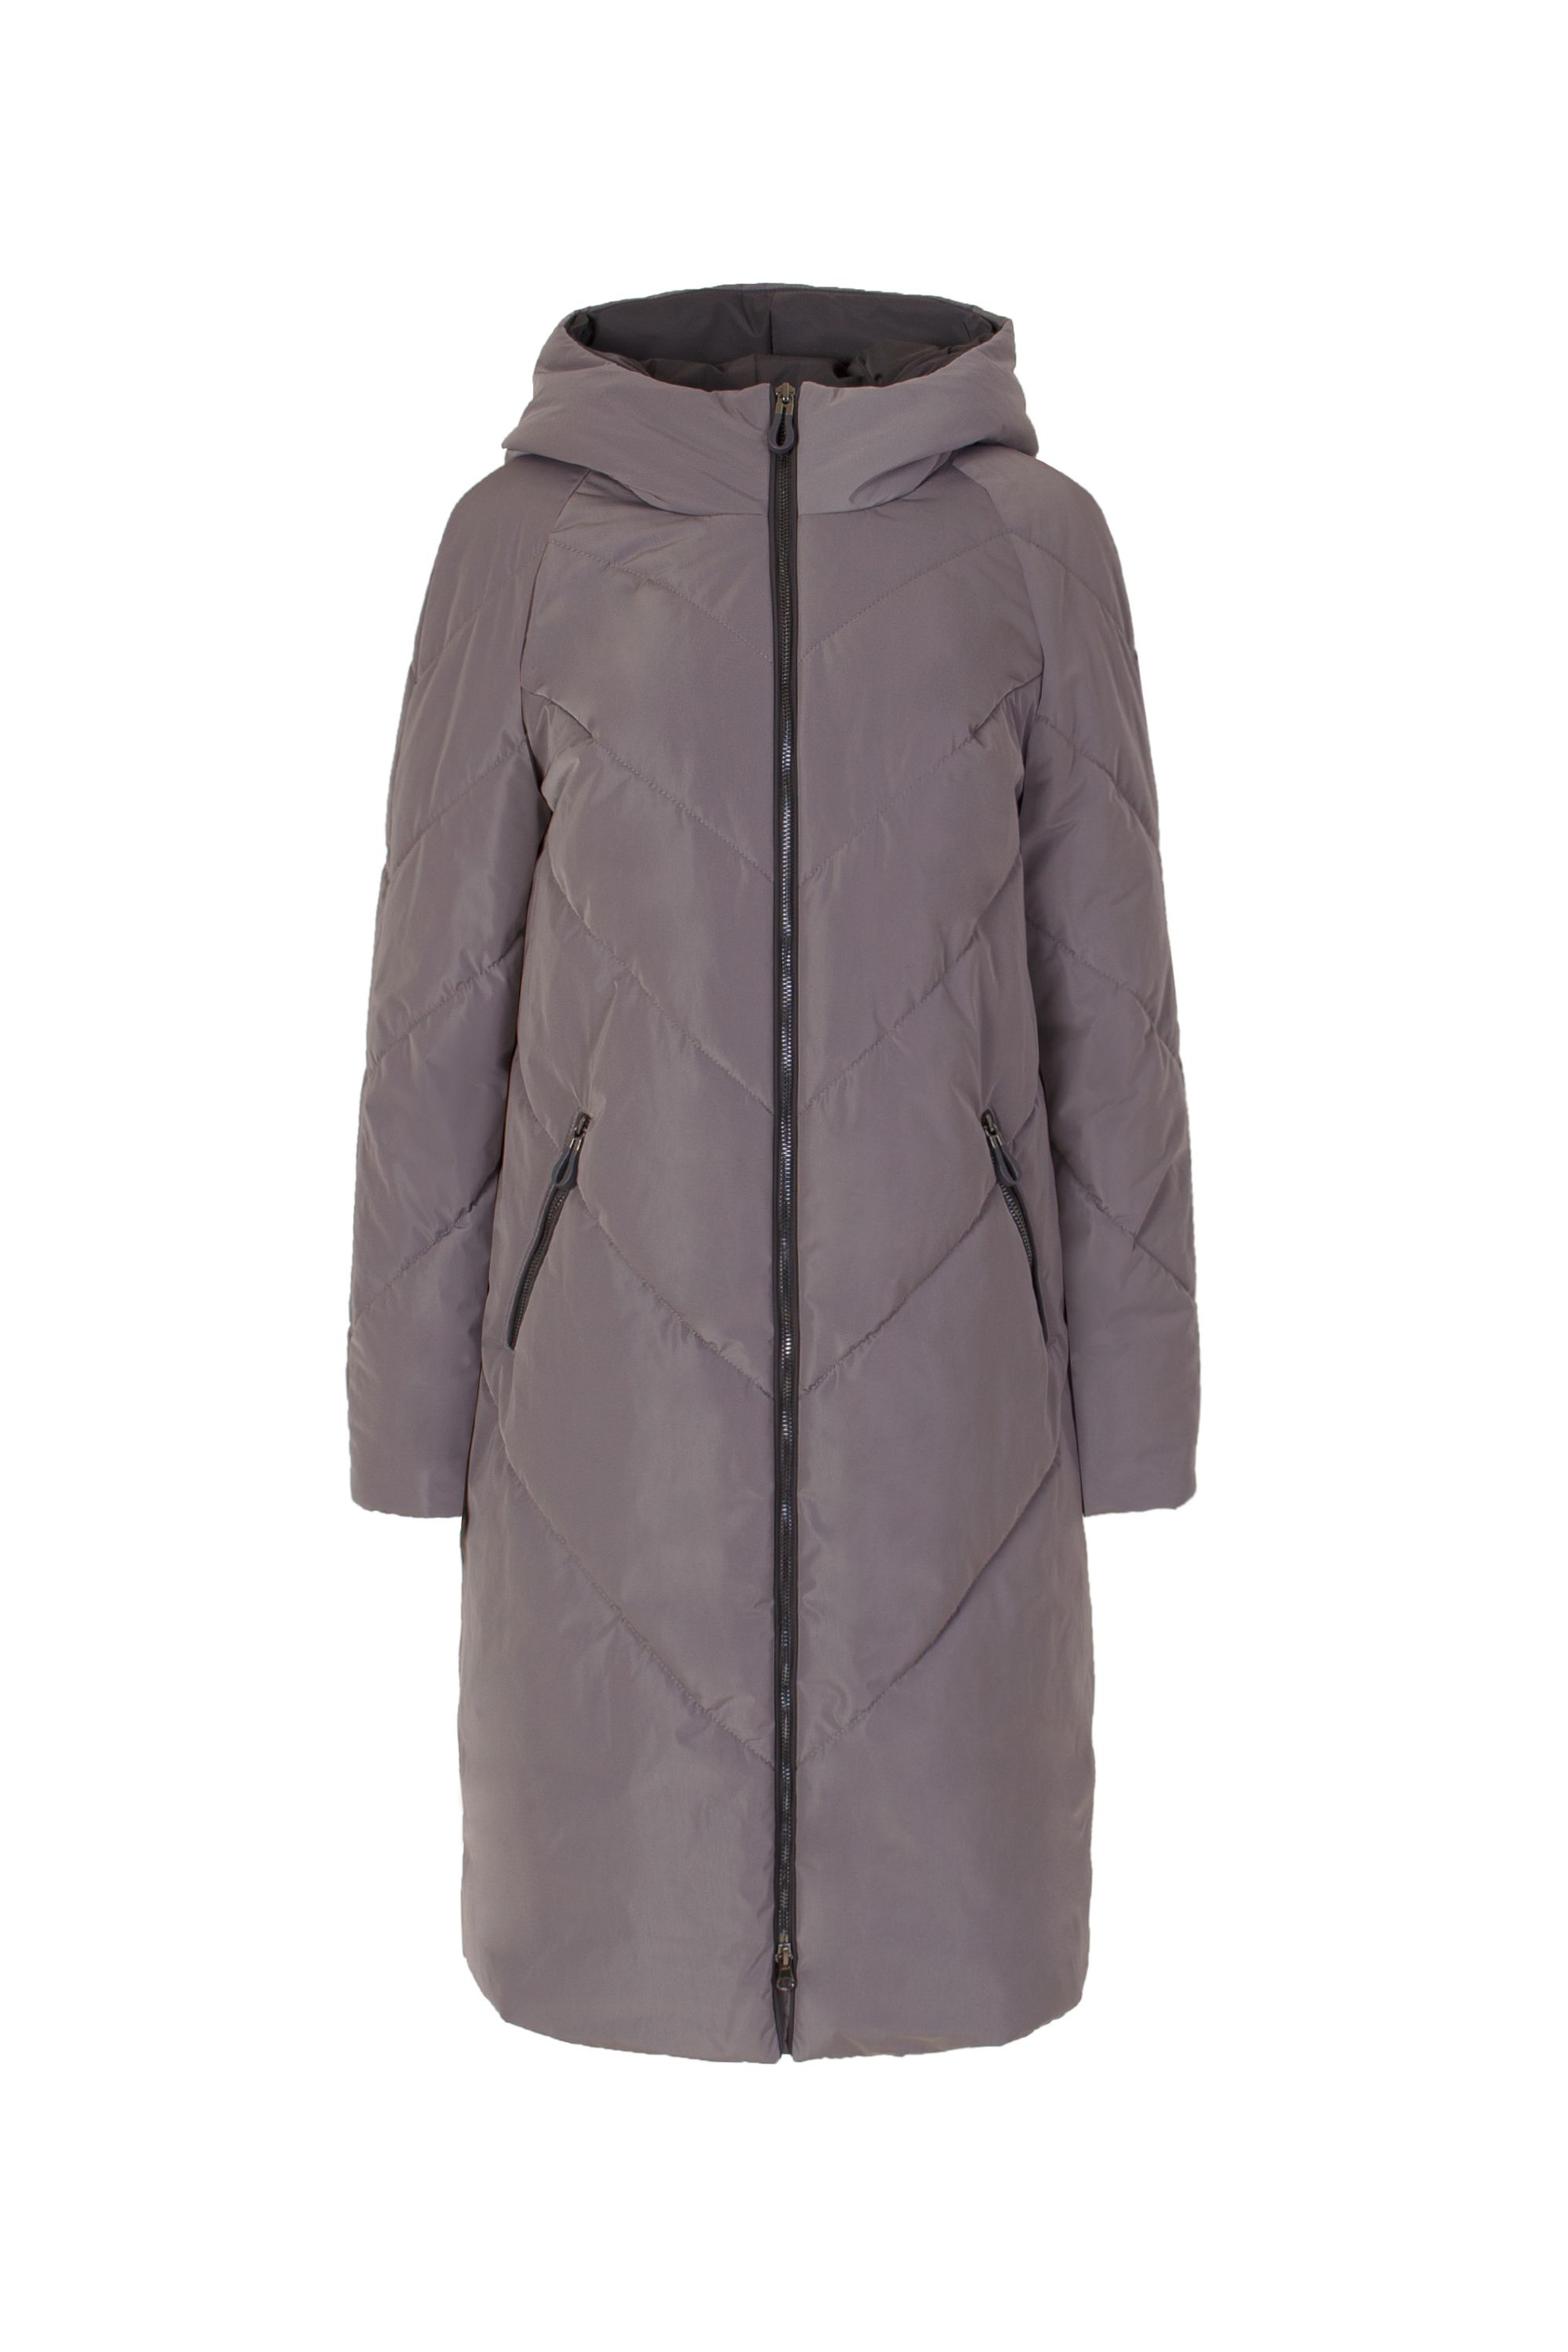 Пальто женское плащевое утепленное 5-9196-4. Фото 1.